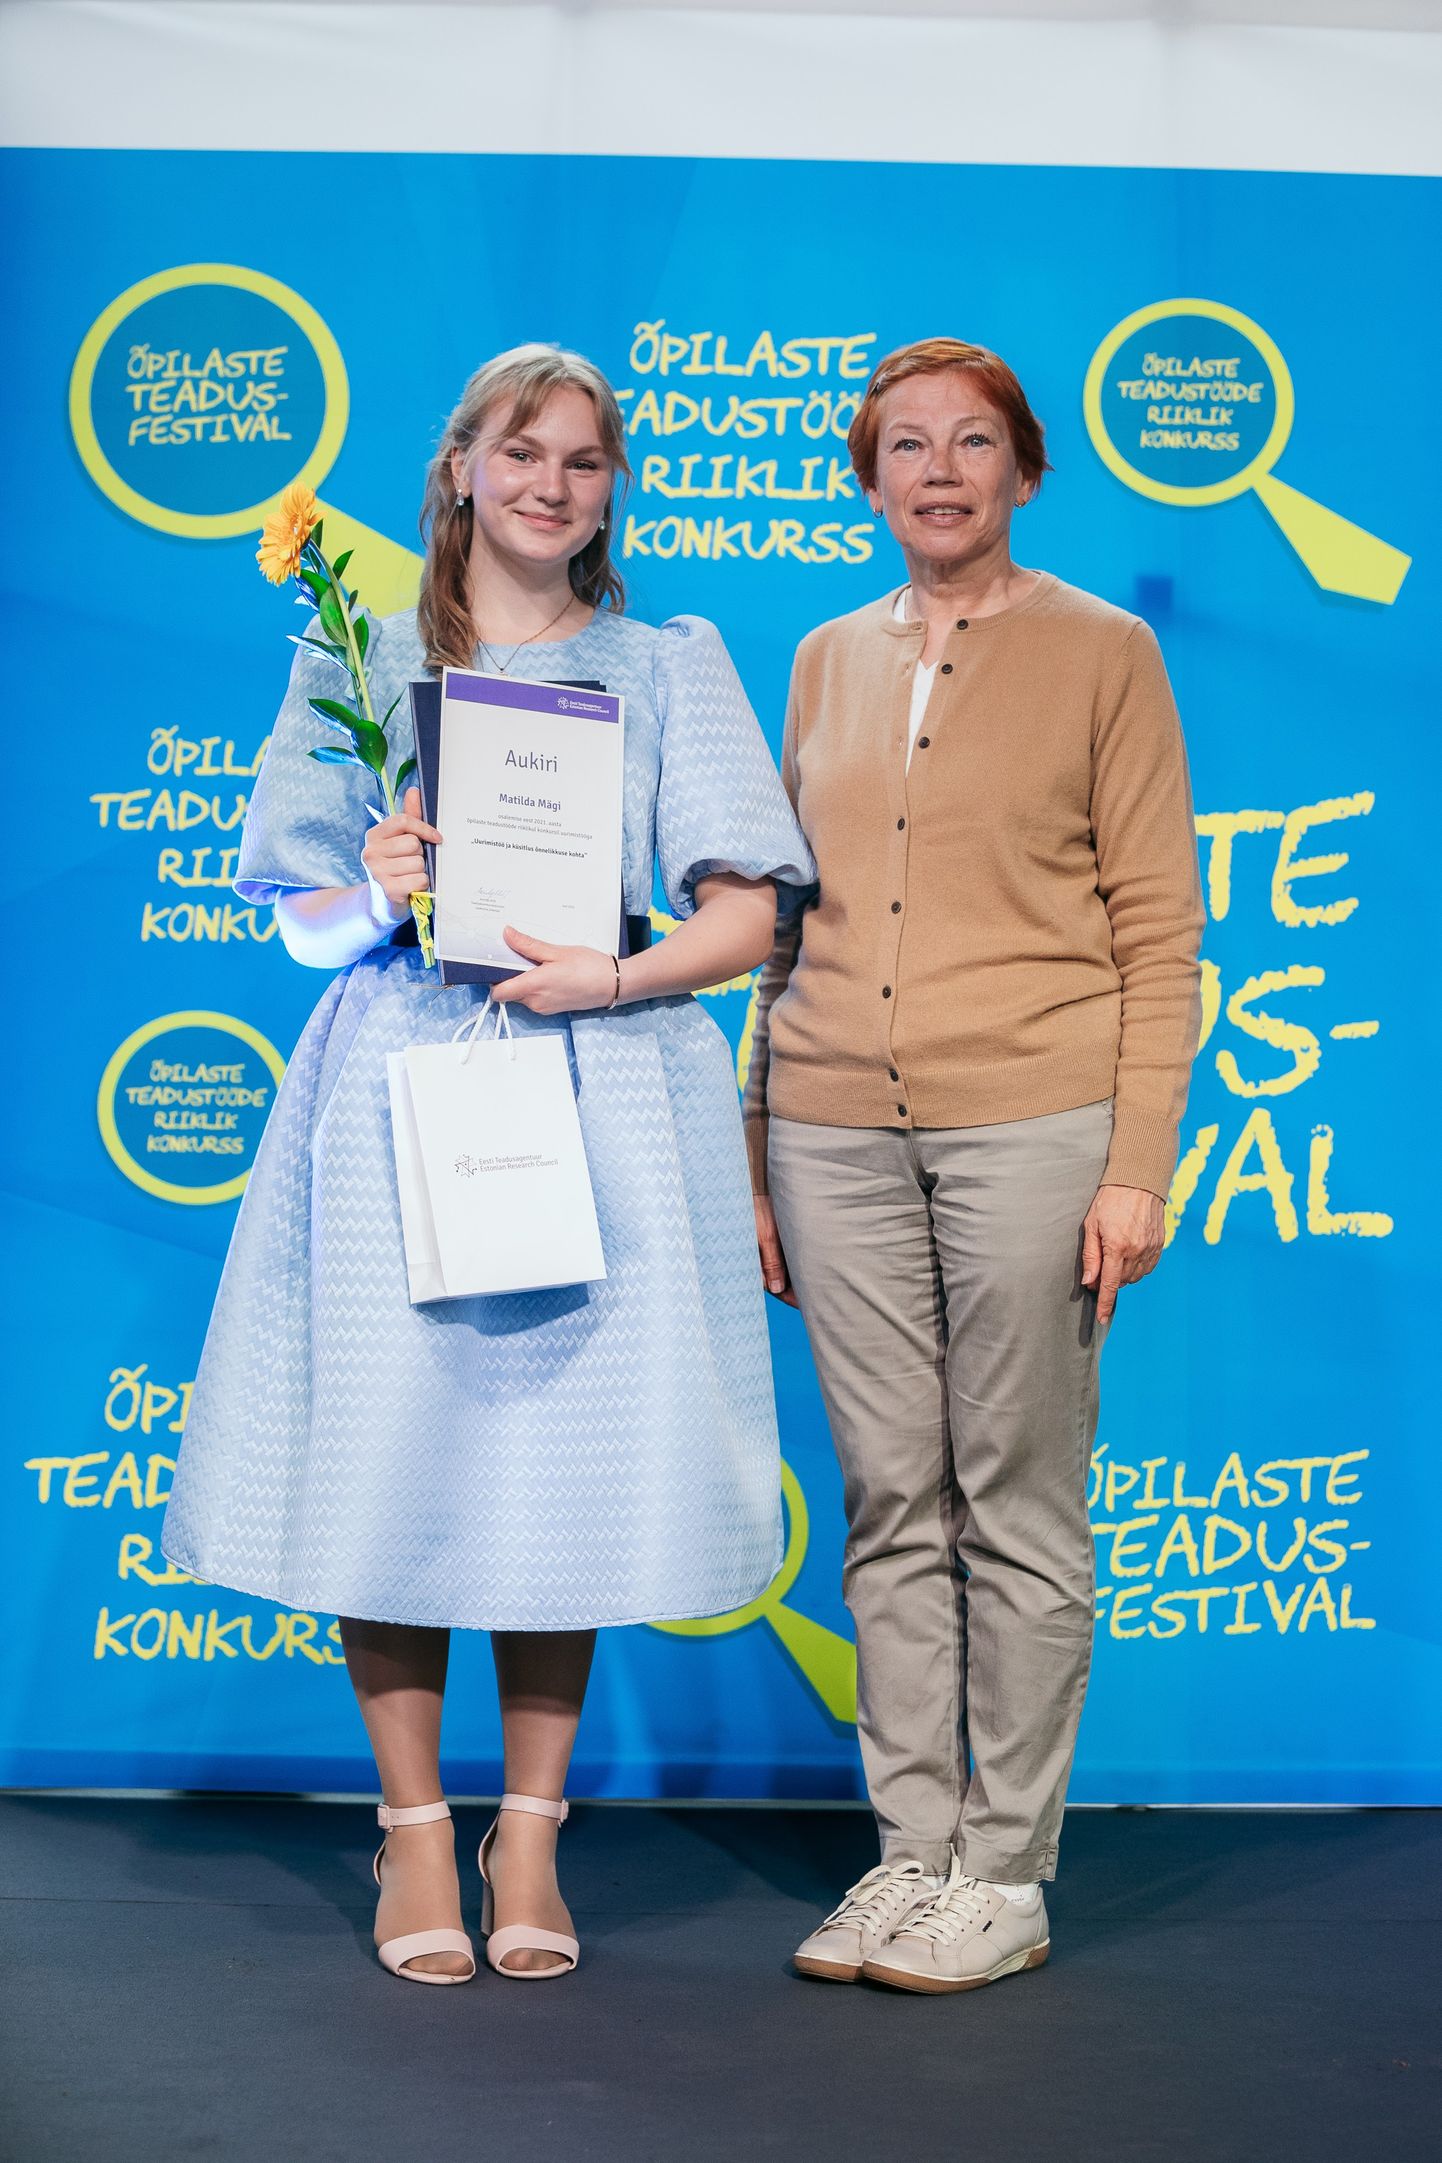 Fotol vasakul Matilda Mägi, paremal Eesti Teadusagentuuri tegevjuht Karin Jaanson.